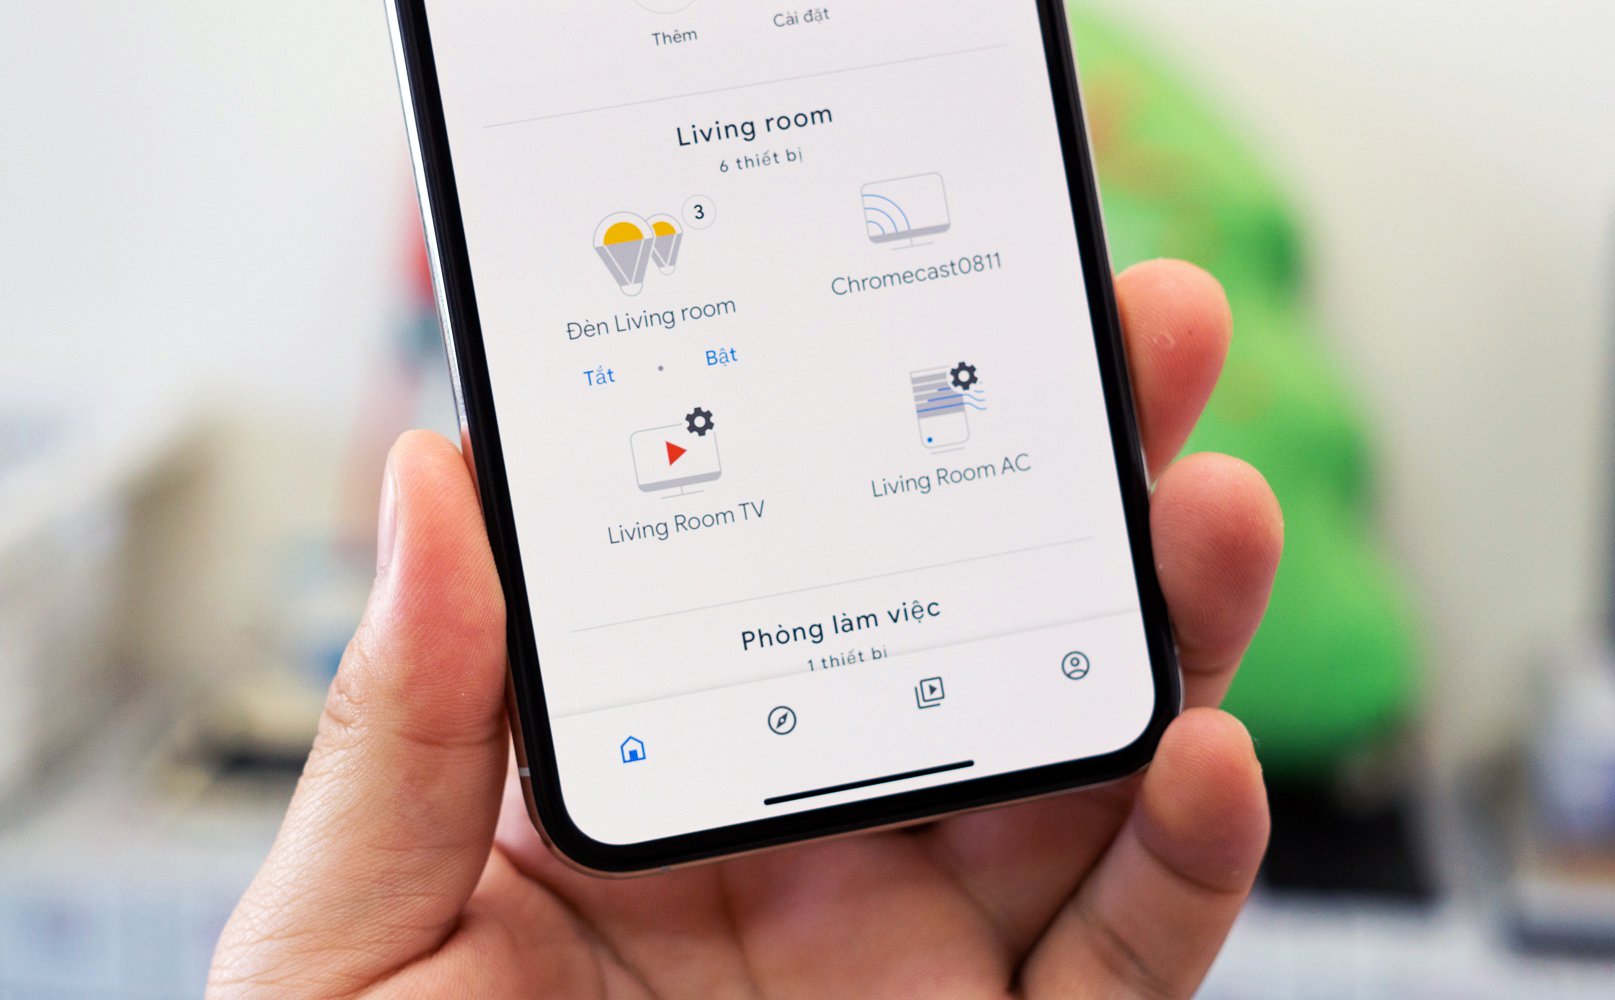 Google Assistant: Google Assistant là trợ lý ảo của bạn với khả năng trả lời các câu hỏi, lên lịch, đặt lịch hẹn, tìm kiếm thông tin và thực hiện nhiều tác vụ khác chỉ bằng giọng nói. Với Google Assistant, bạn sẽ không còn quá bận rộn với công việc và có thêm thời gian dành riêng cho bản thân.